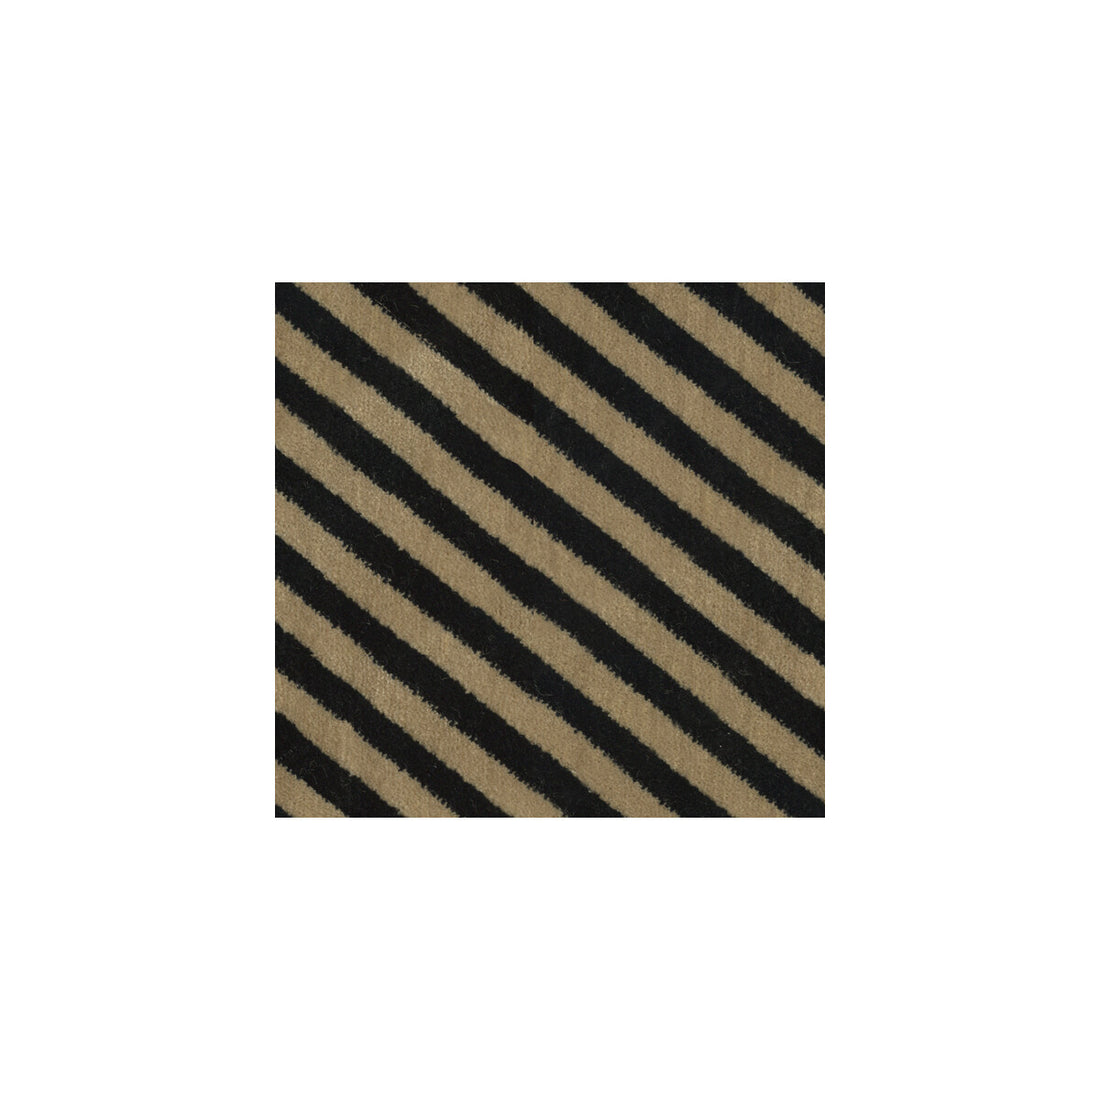 Oblique fabric in beige/noir color - pattern GWF-3050.816.0 - by Lee Jofa Modern in the Kelly Wearstler II collection